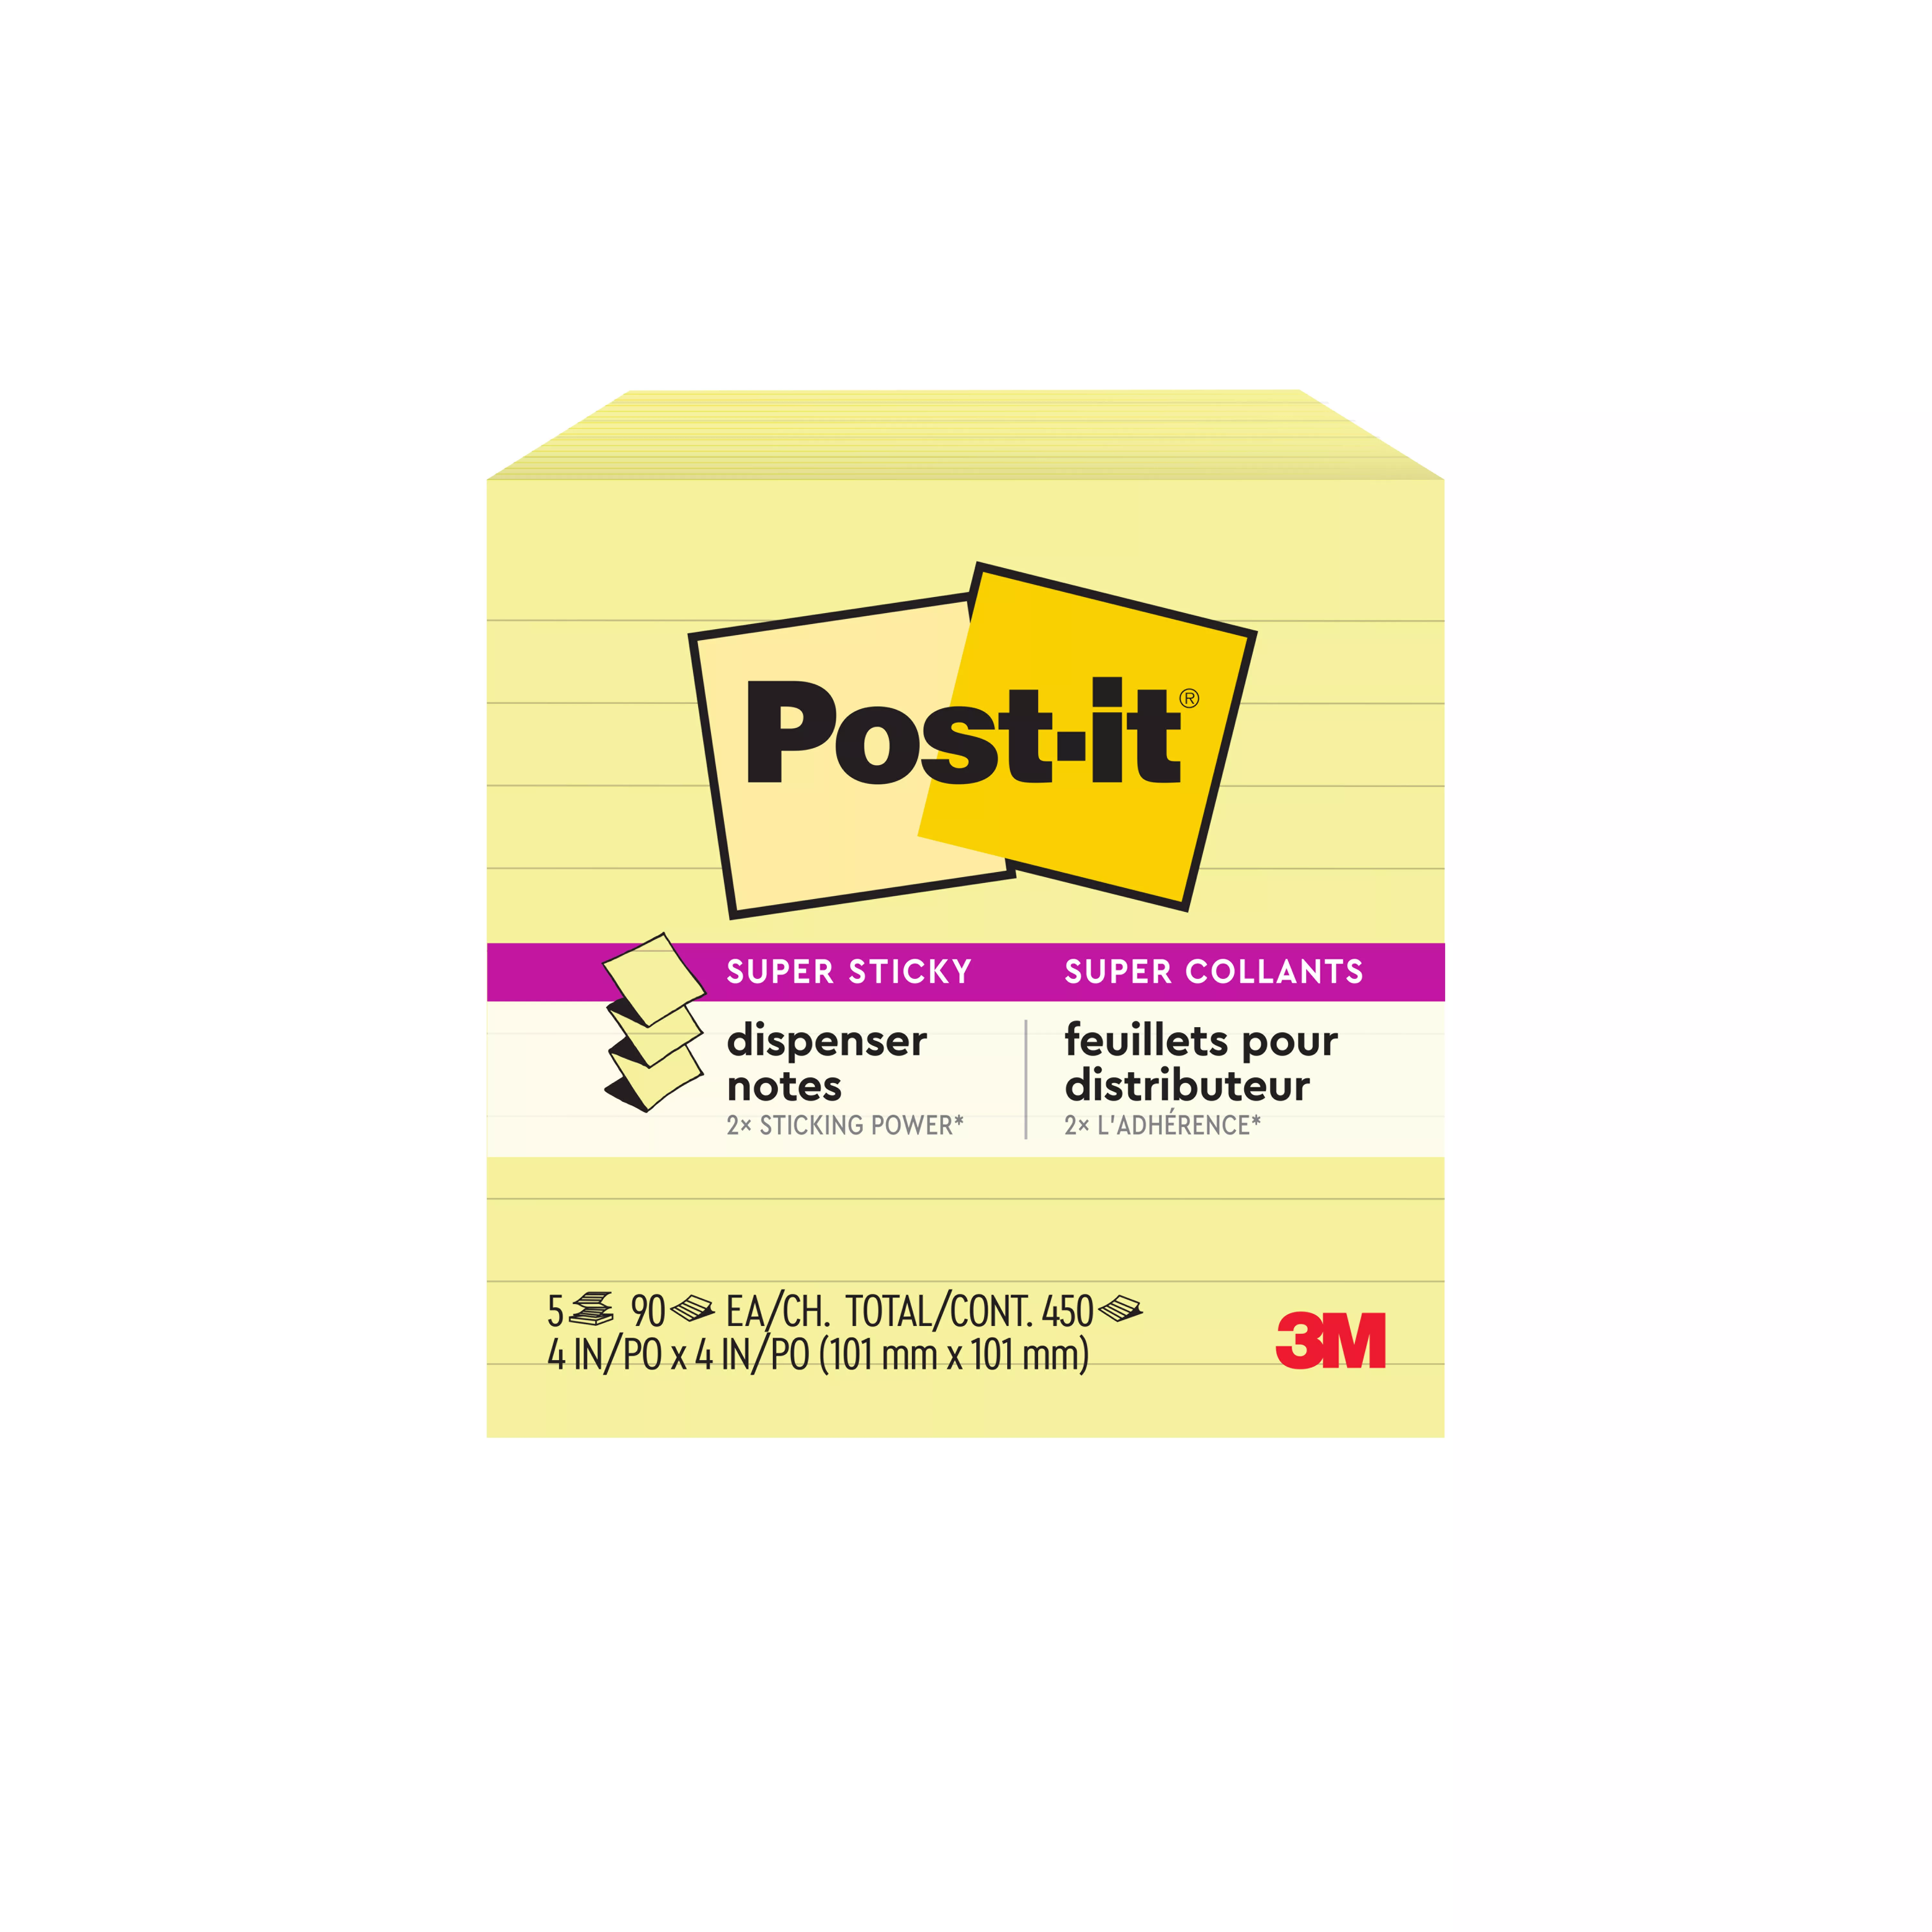 SKU 7100096705 | Post-it® Super Sticky Dispenser Pop-up Notes R330-10SSCY